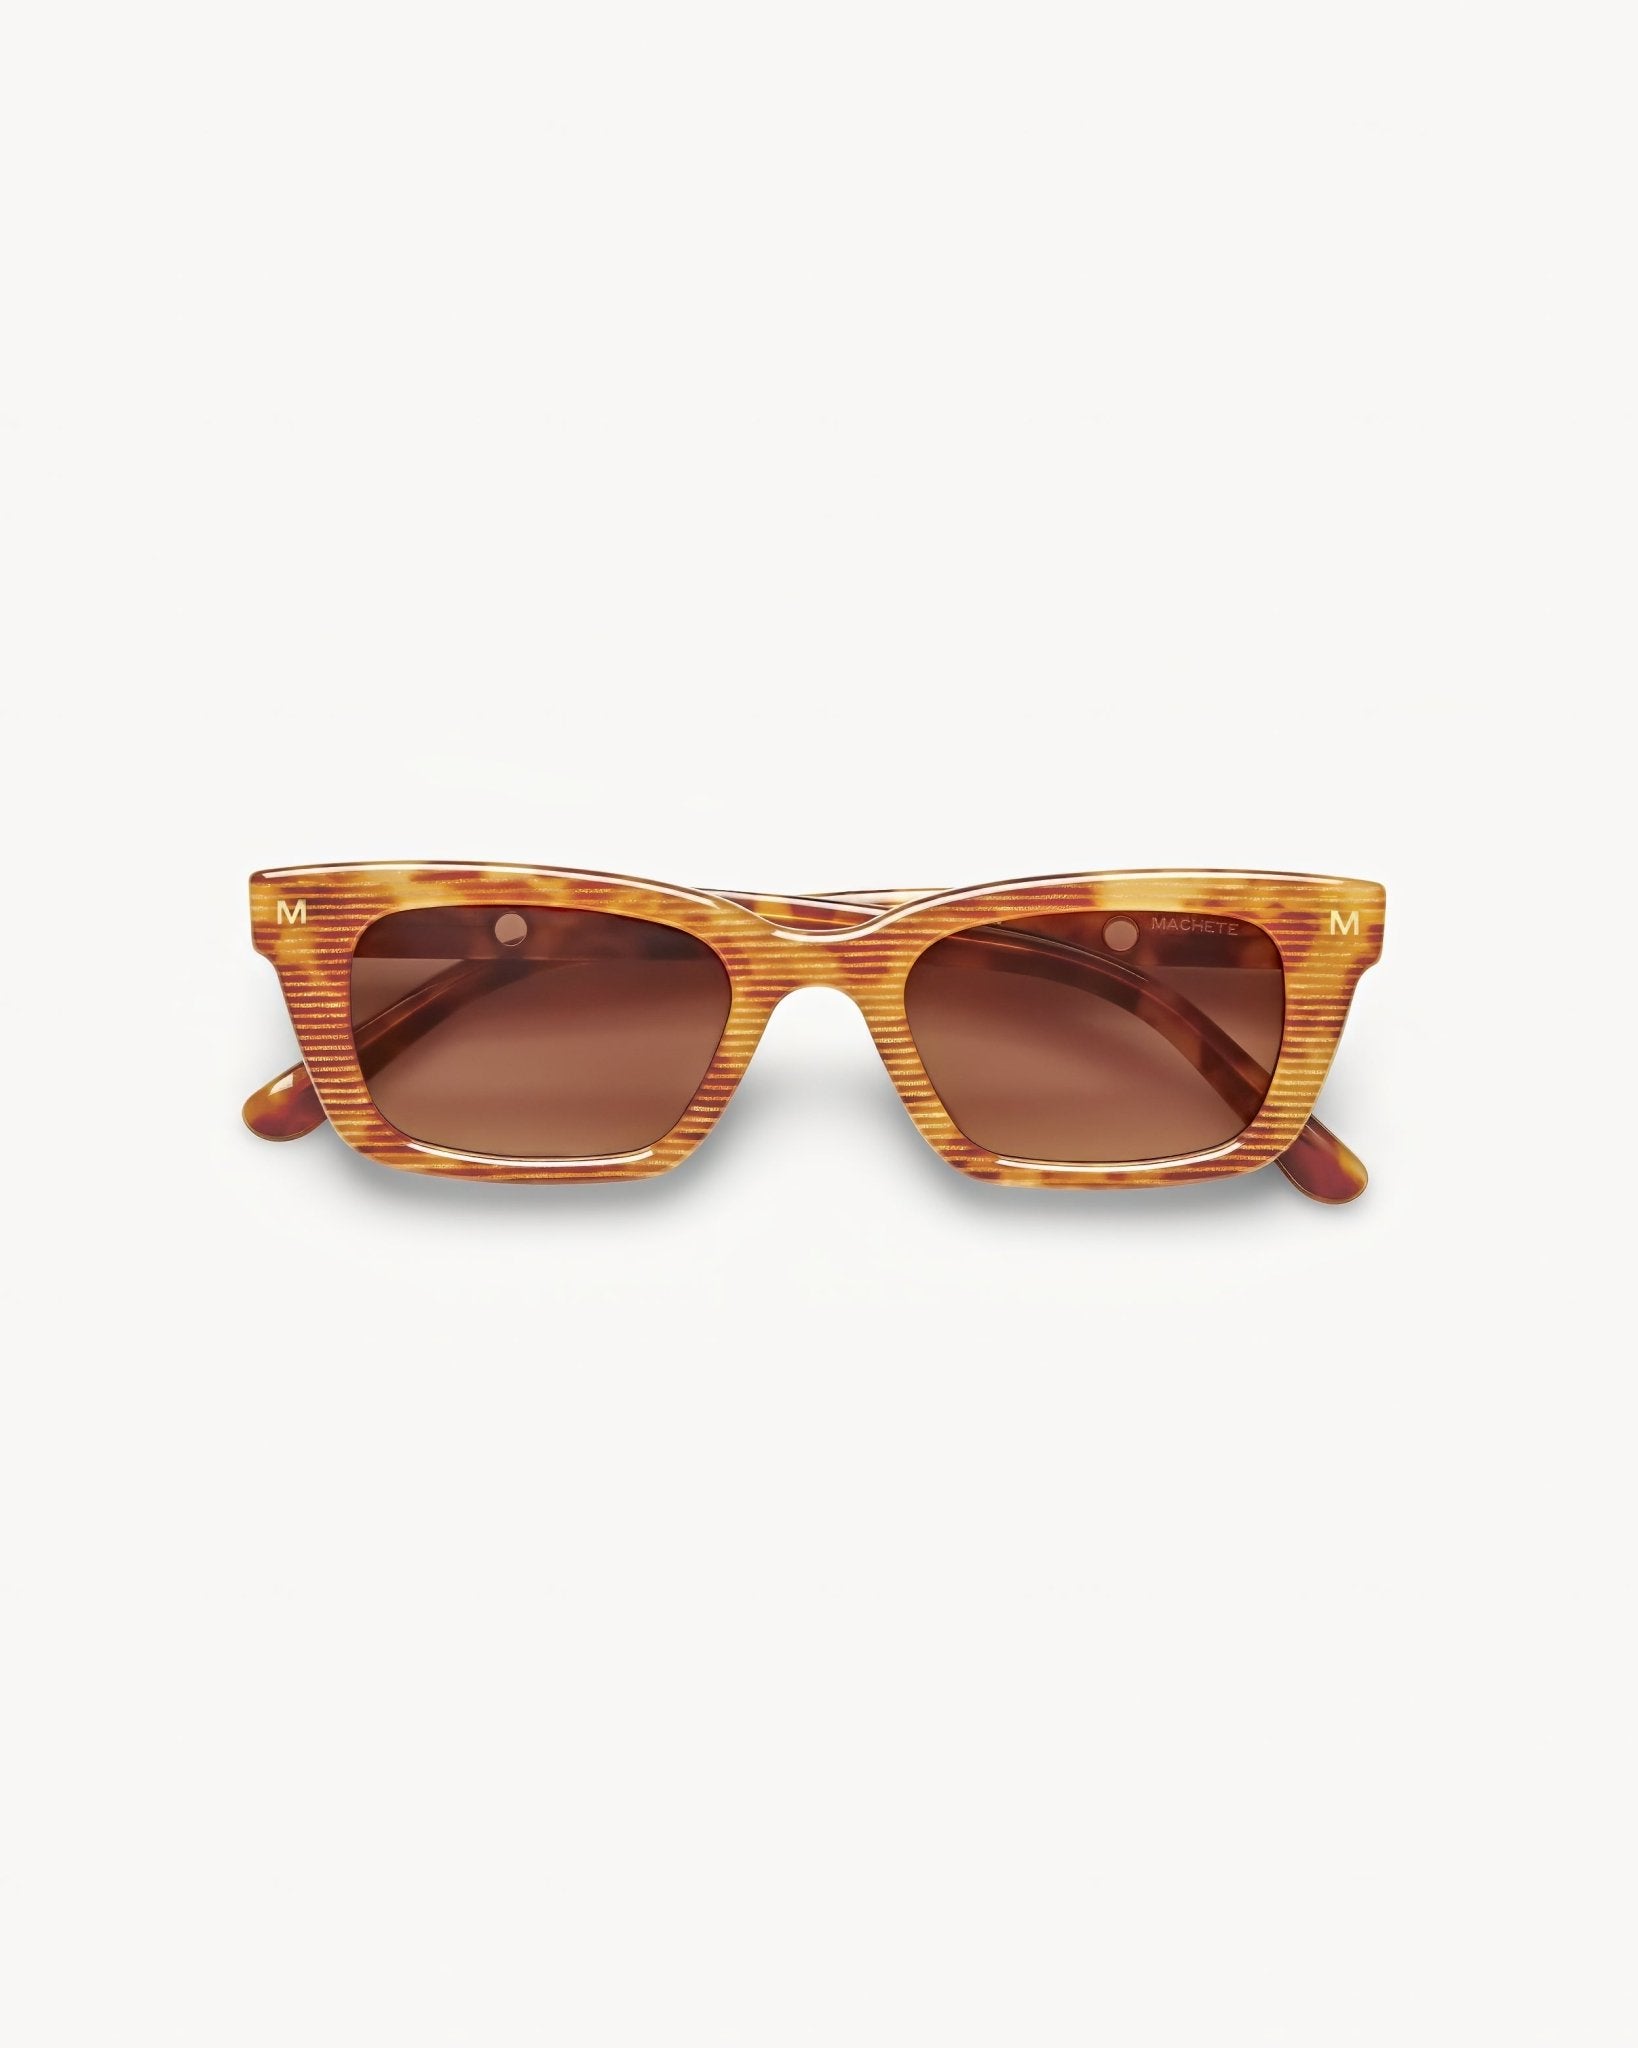 MACHETE Ruby Sunglasses in Light Tortoise Stripe